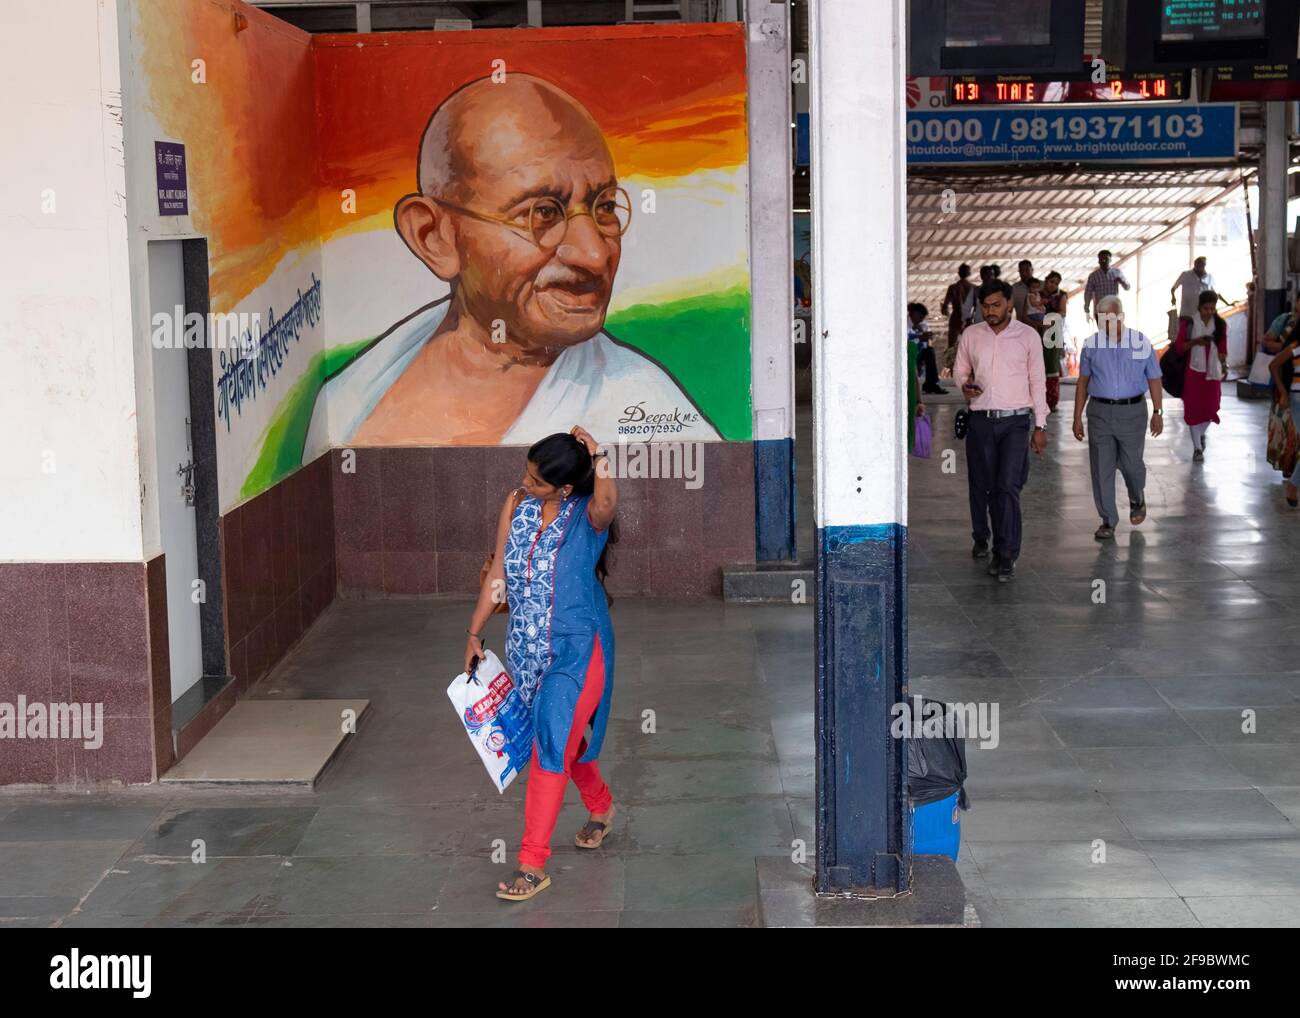 Commuter marchant au-delà d'une image de Mahatma Gandhi à l'intérieur de la gare de Dadar à Mumbai, Maharashtra, Inde, Asie. Banque D'Images